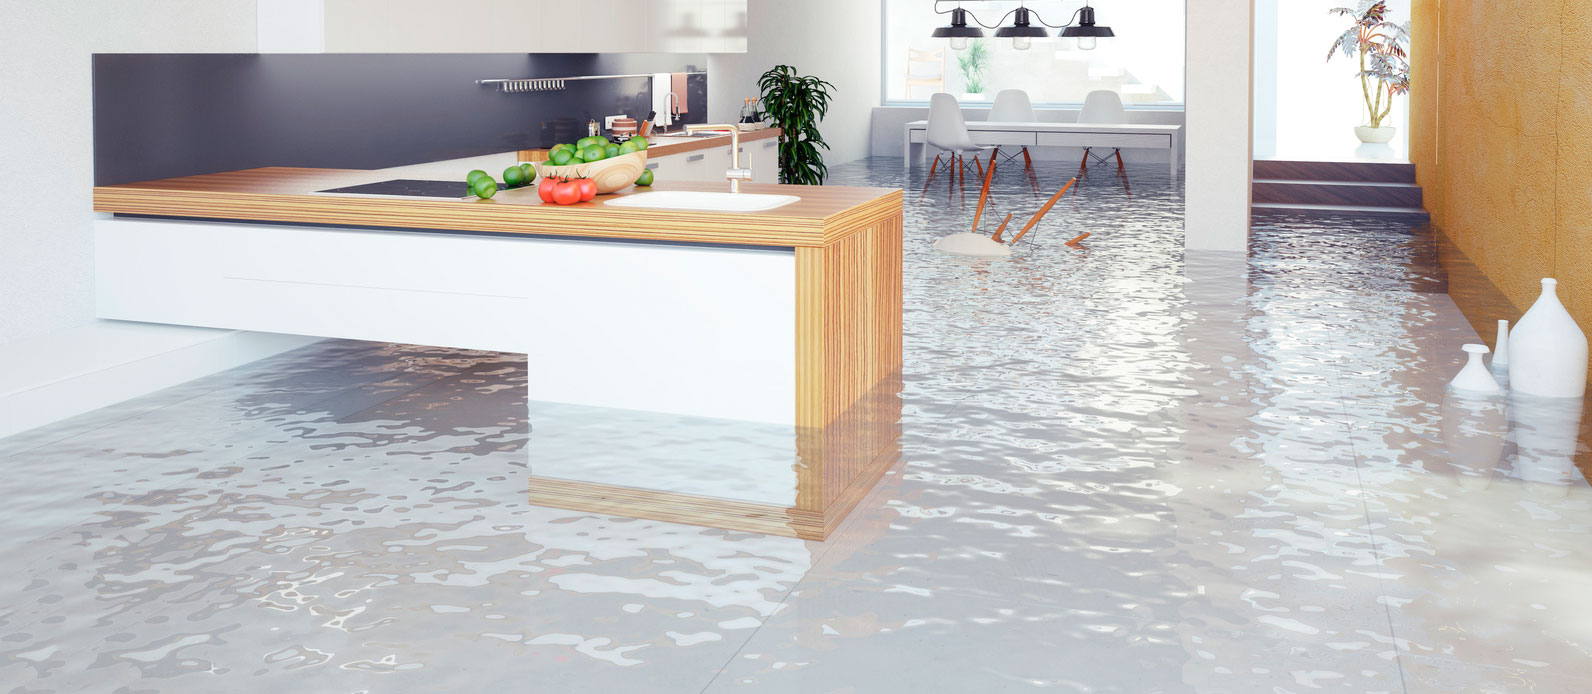 Imagen de una cocina inundada